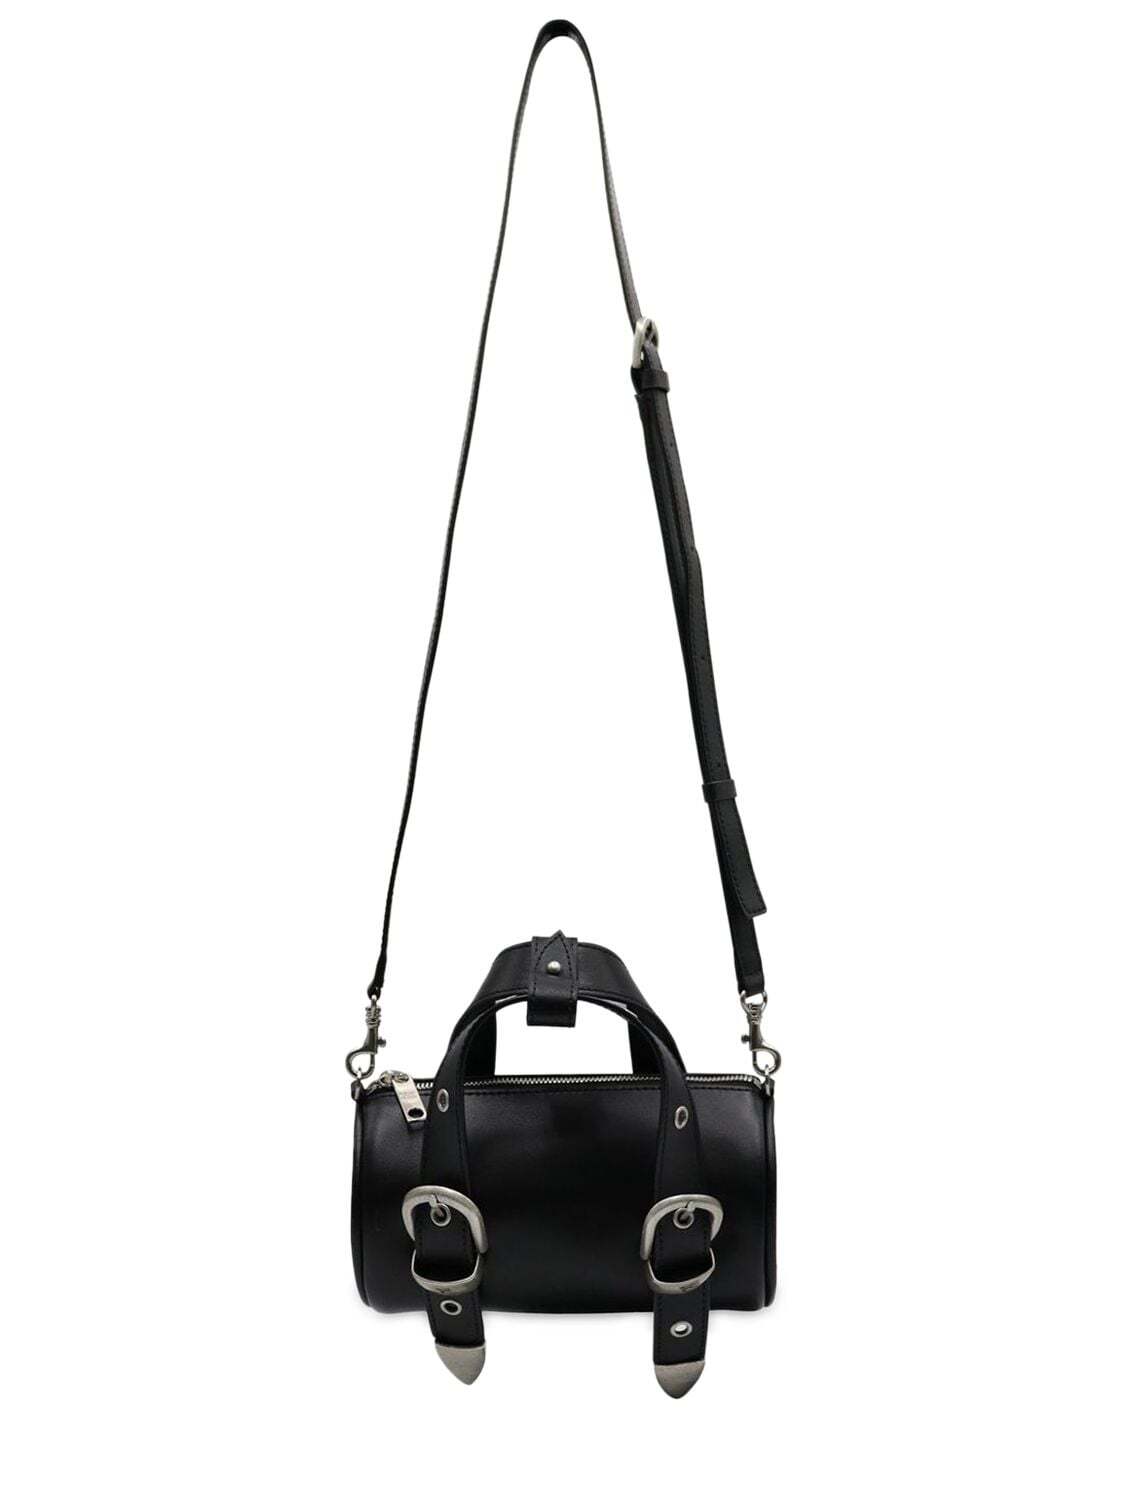 MARGE SHERWOOD Belted Logo Leather Top Handle Bag in black - Wheretoget